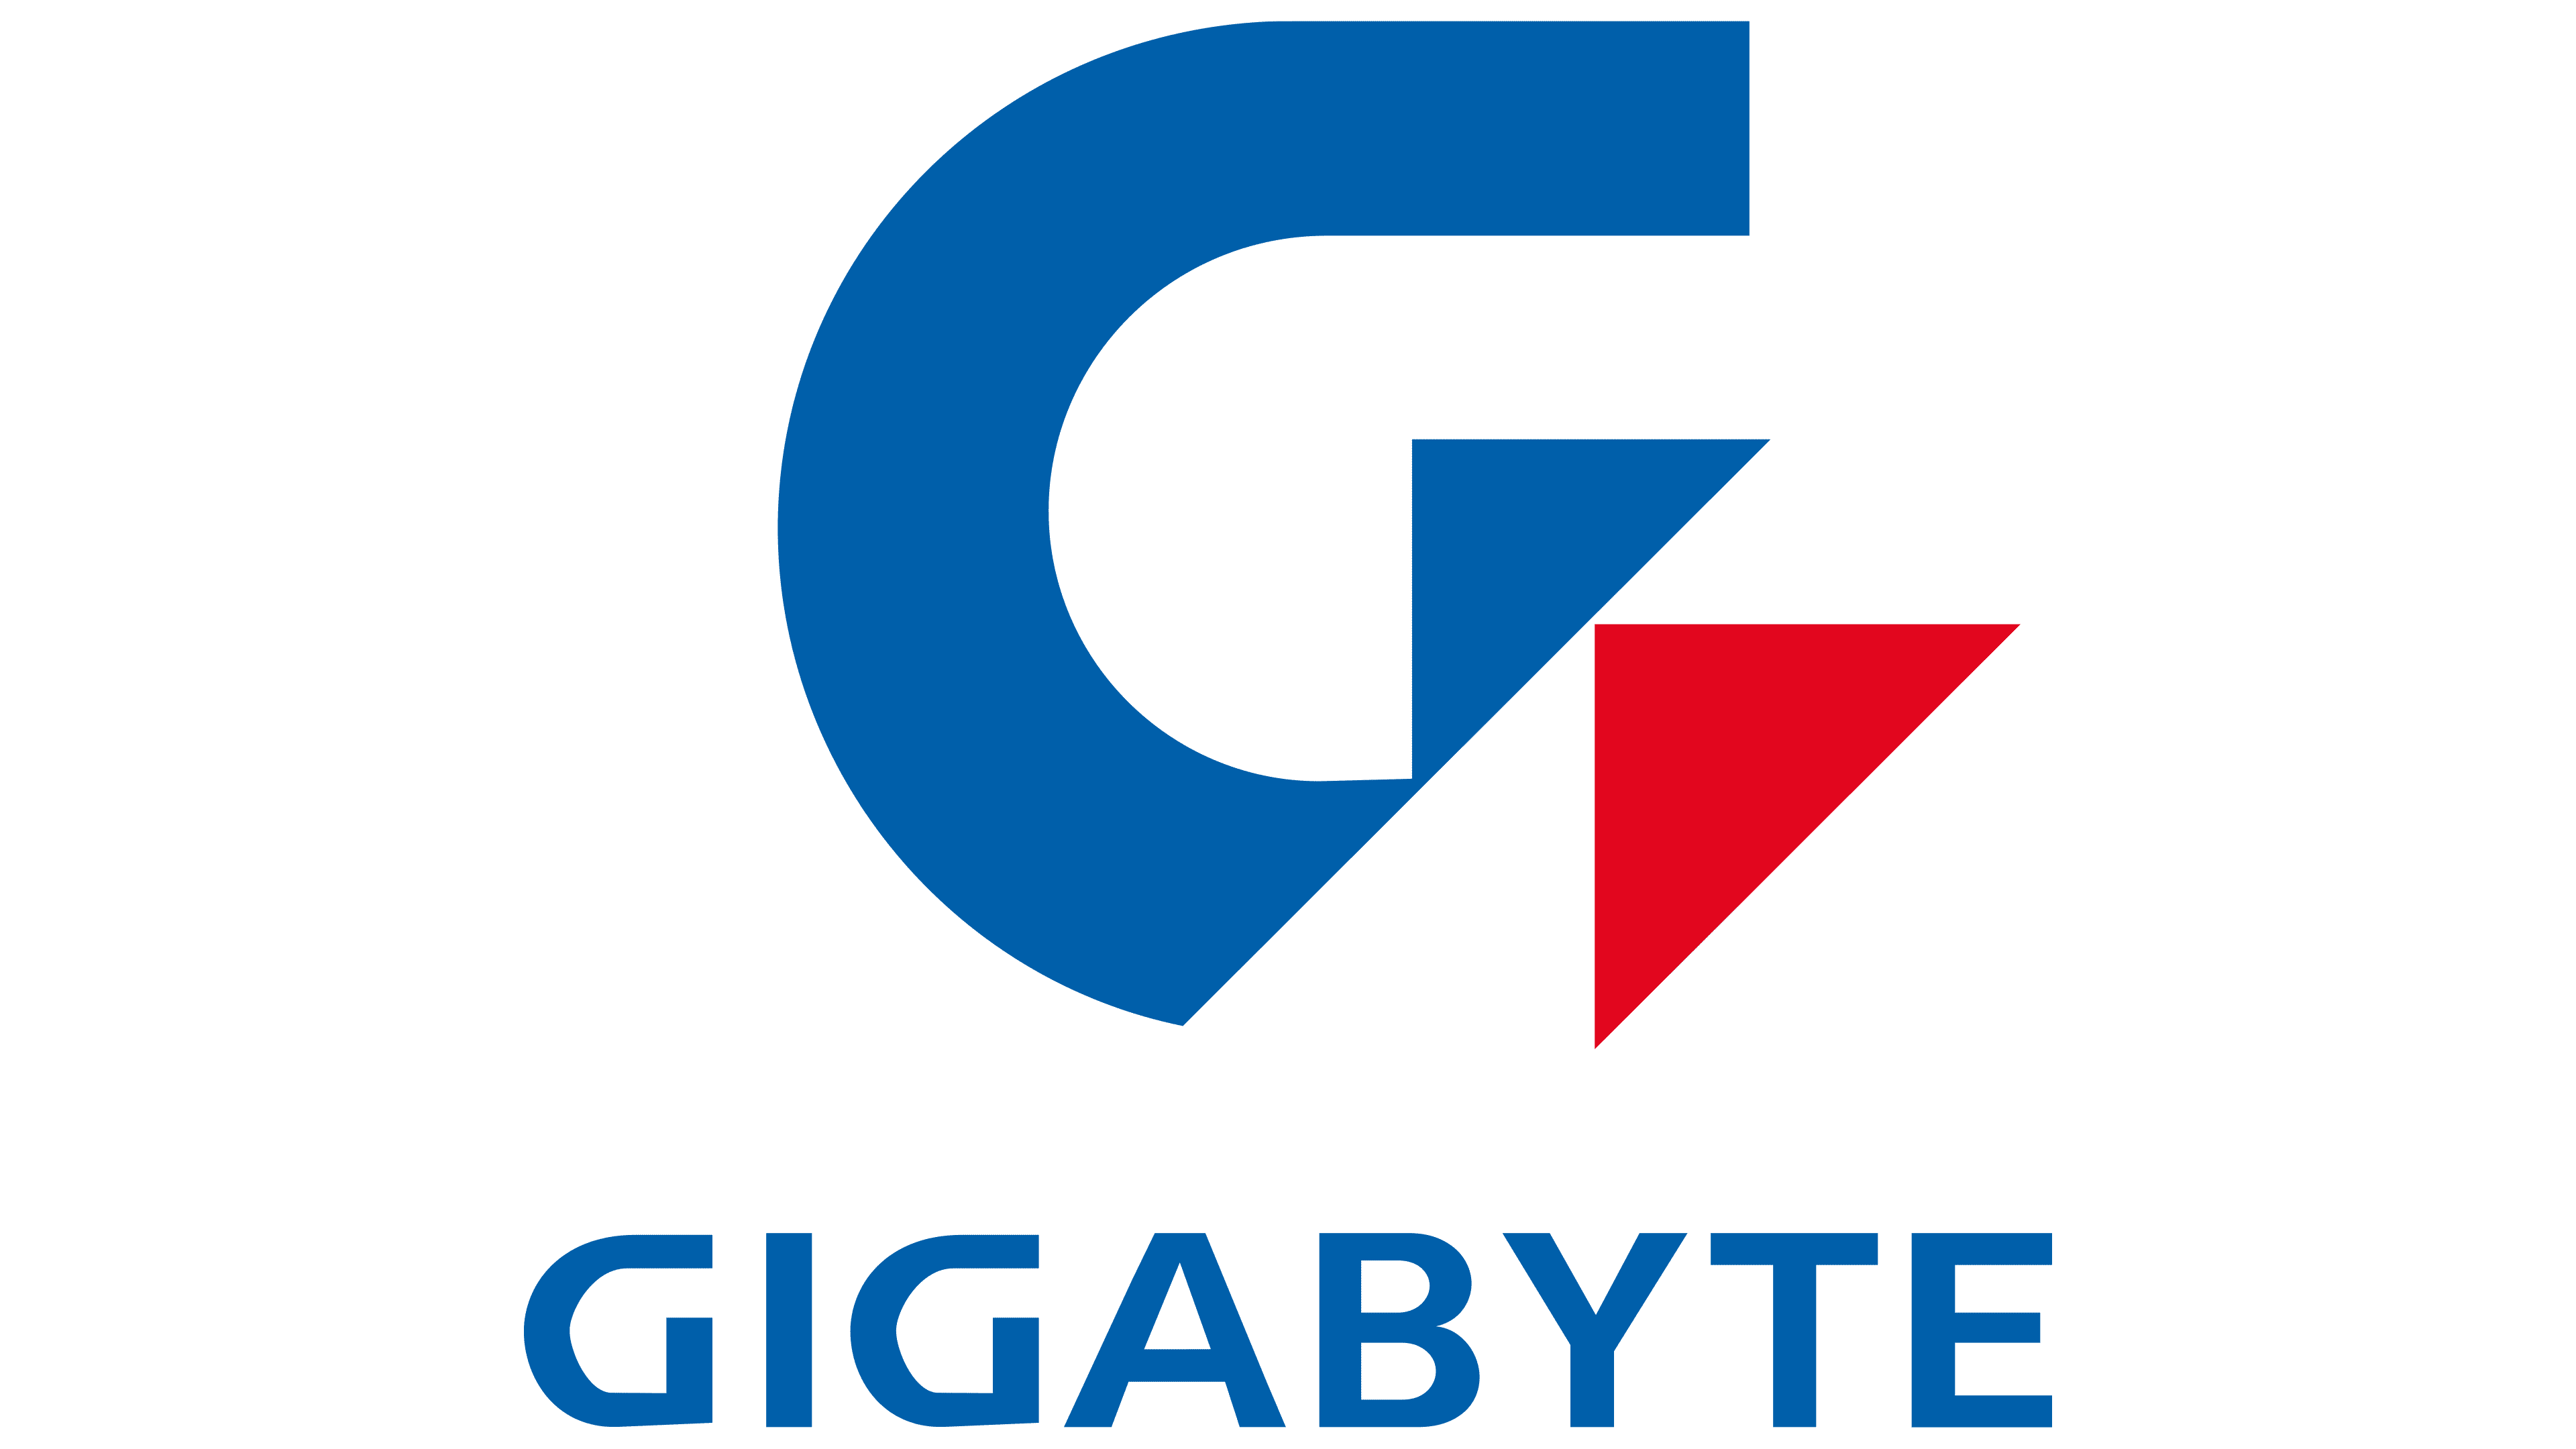 Gigabyte Transparent Logo PNG